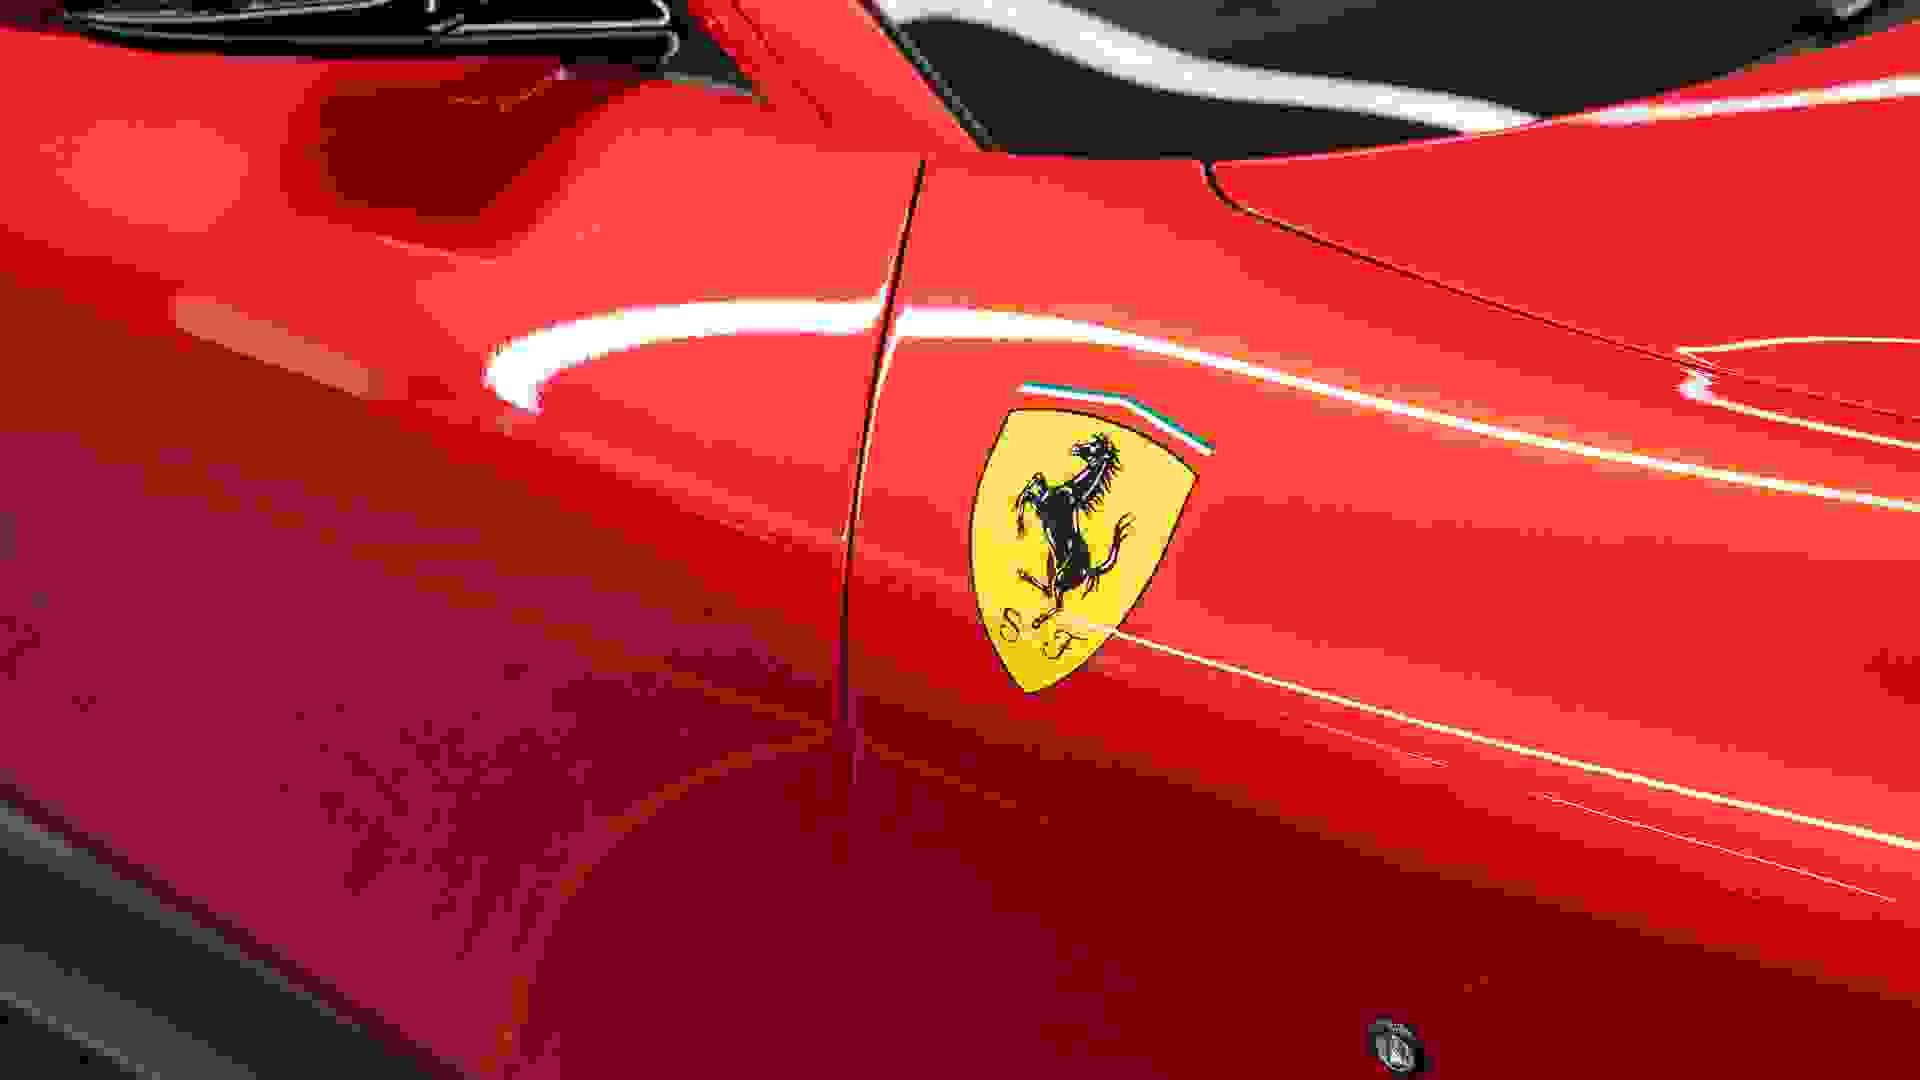 Ferrari Roma Photo fb11f4bd-f3ae-4a0d-aaa8-570d0aed0717.jpg